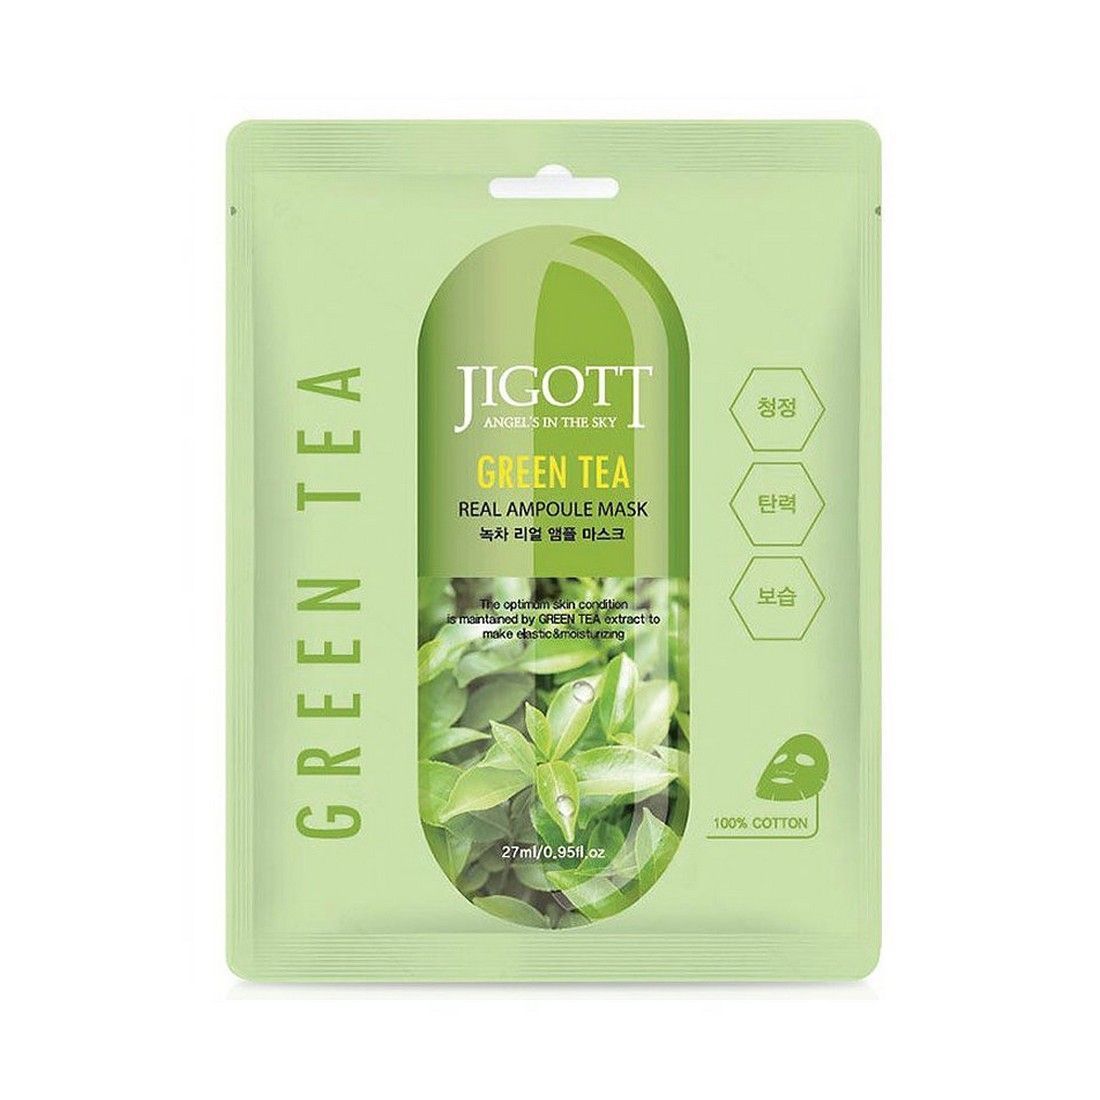 орг 10%Jigott Ампульная тканевая маска с экстрактом зелёного чая, 27 мл